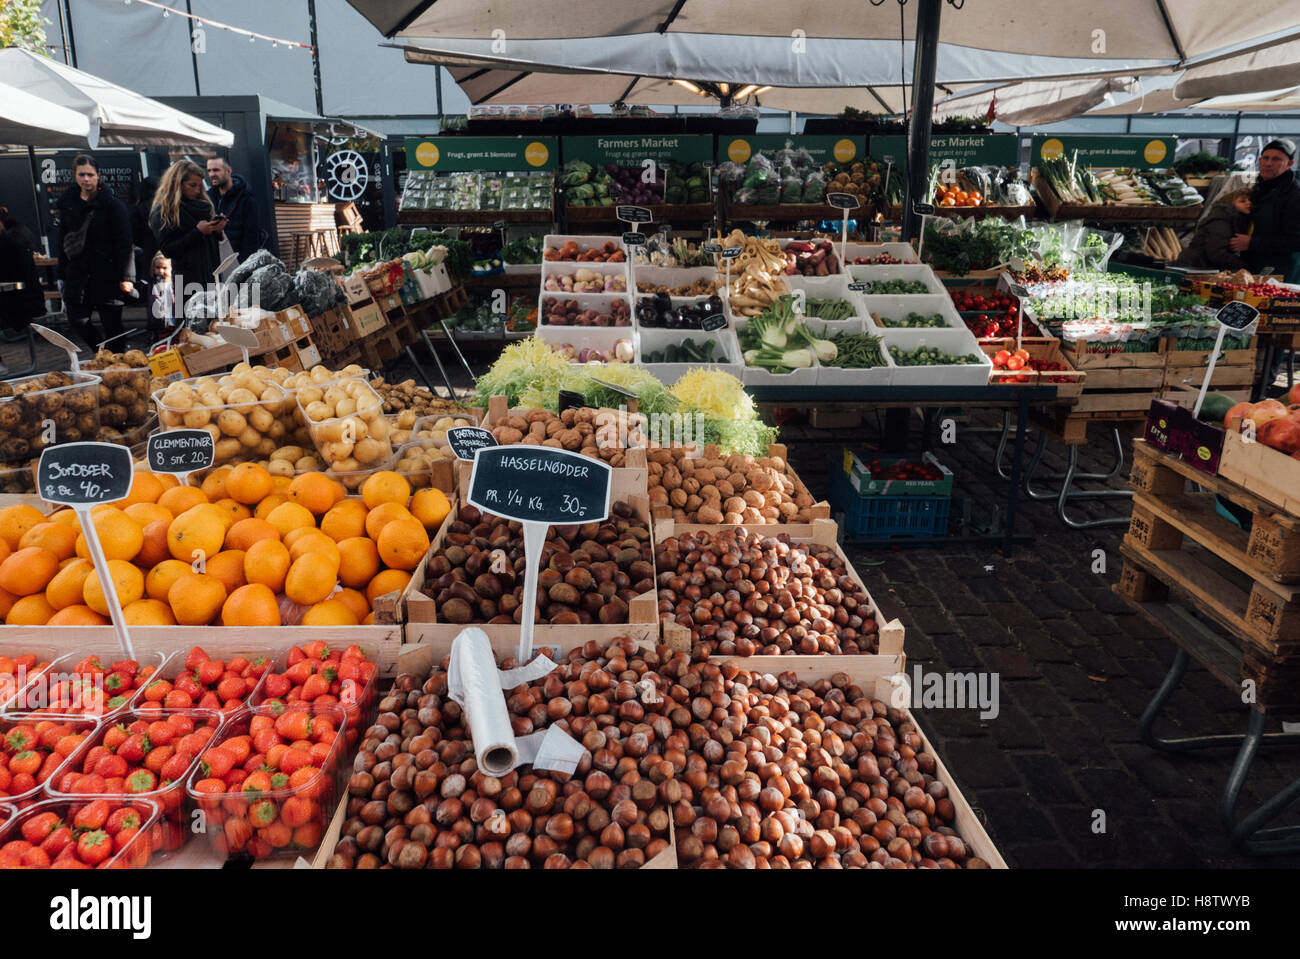 A fruit stall at the Torvehallerne market, Copenhagen Stock Photo